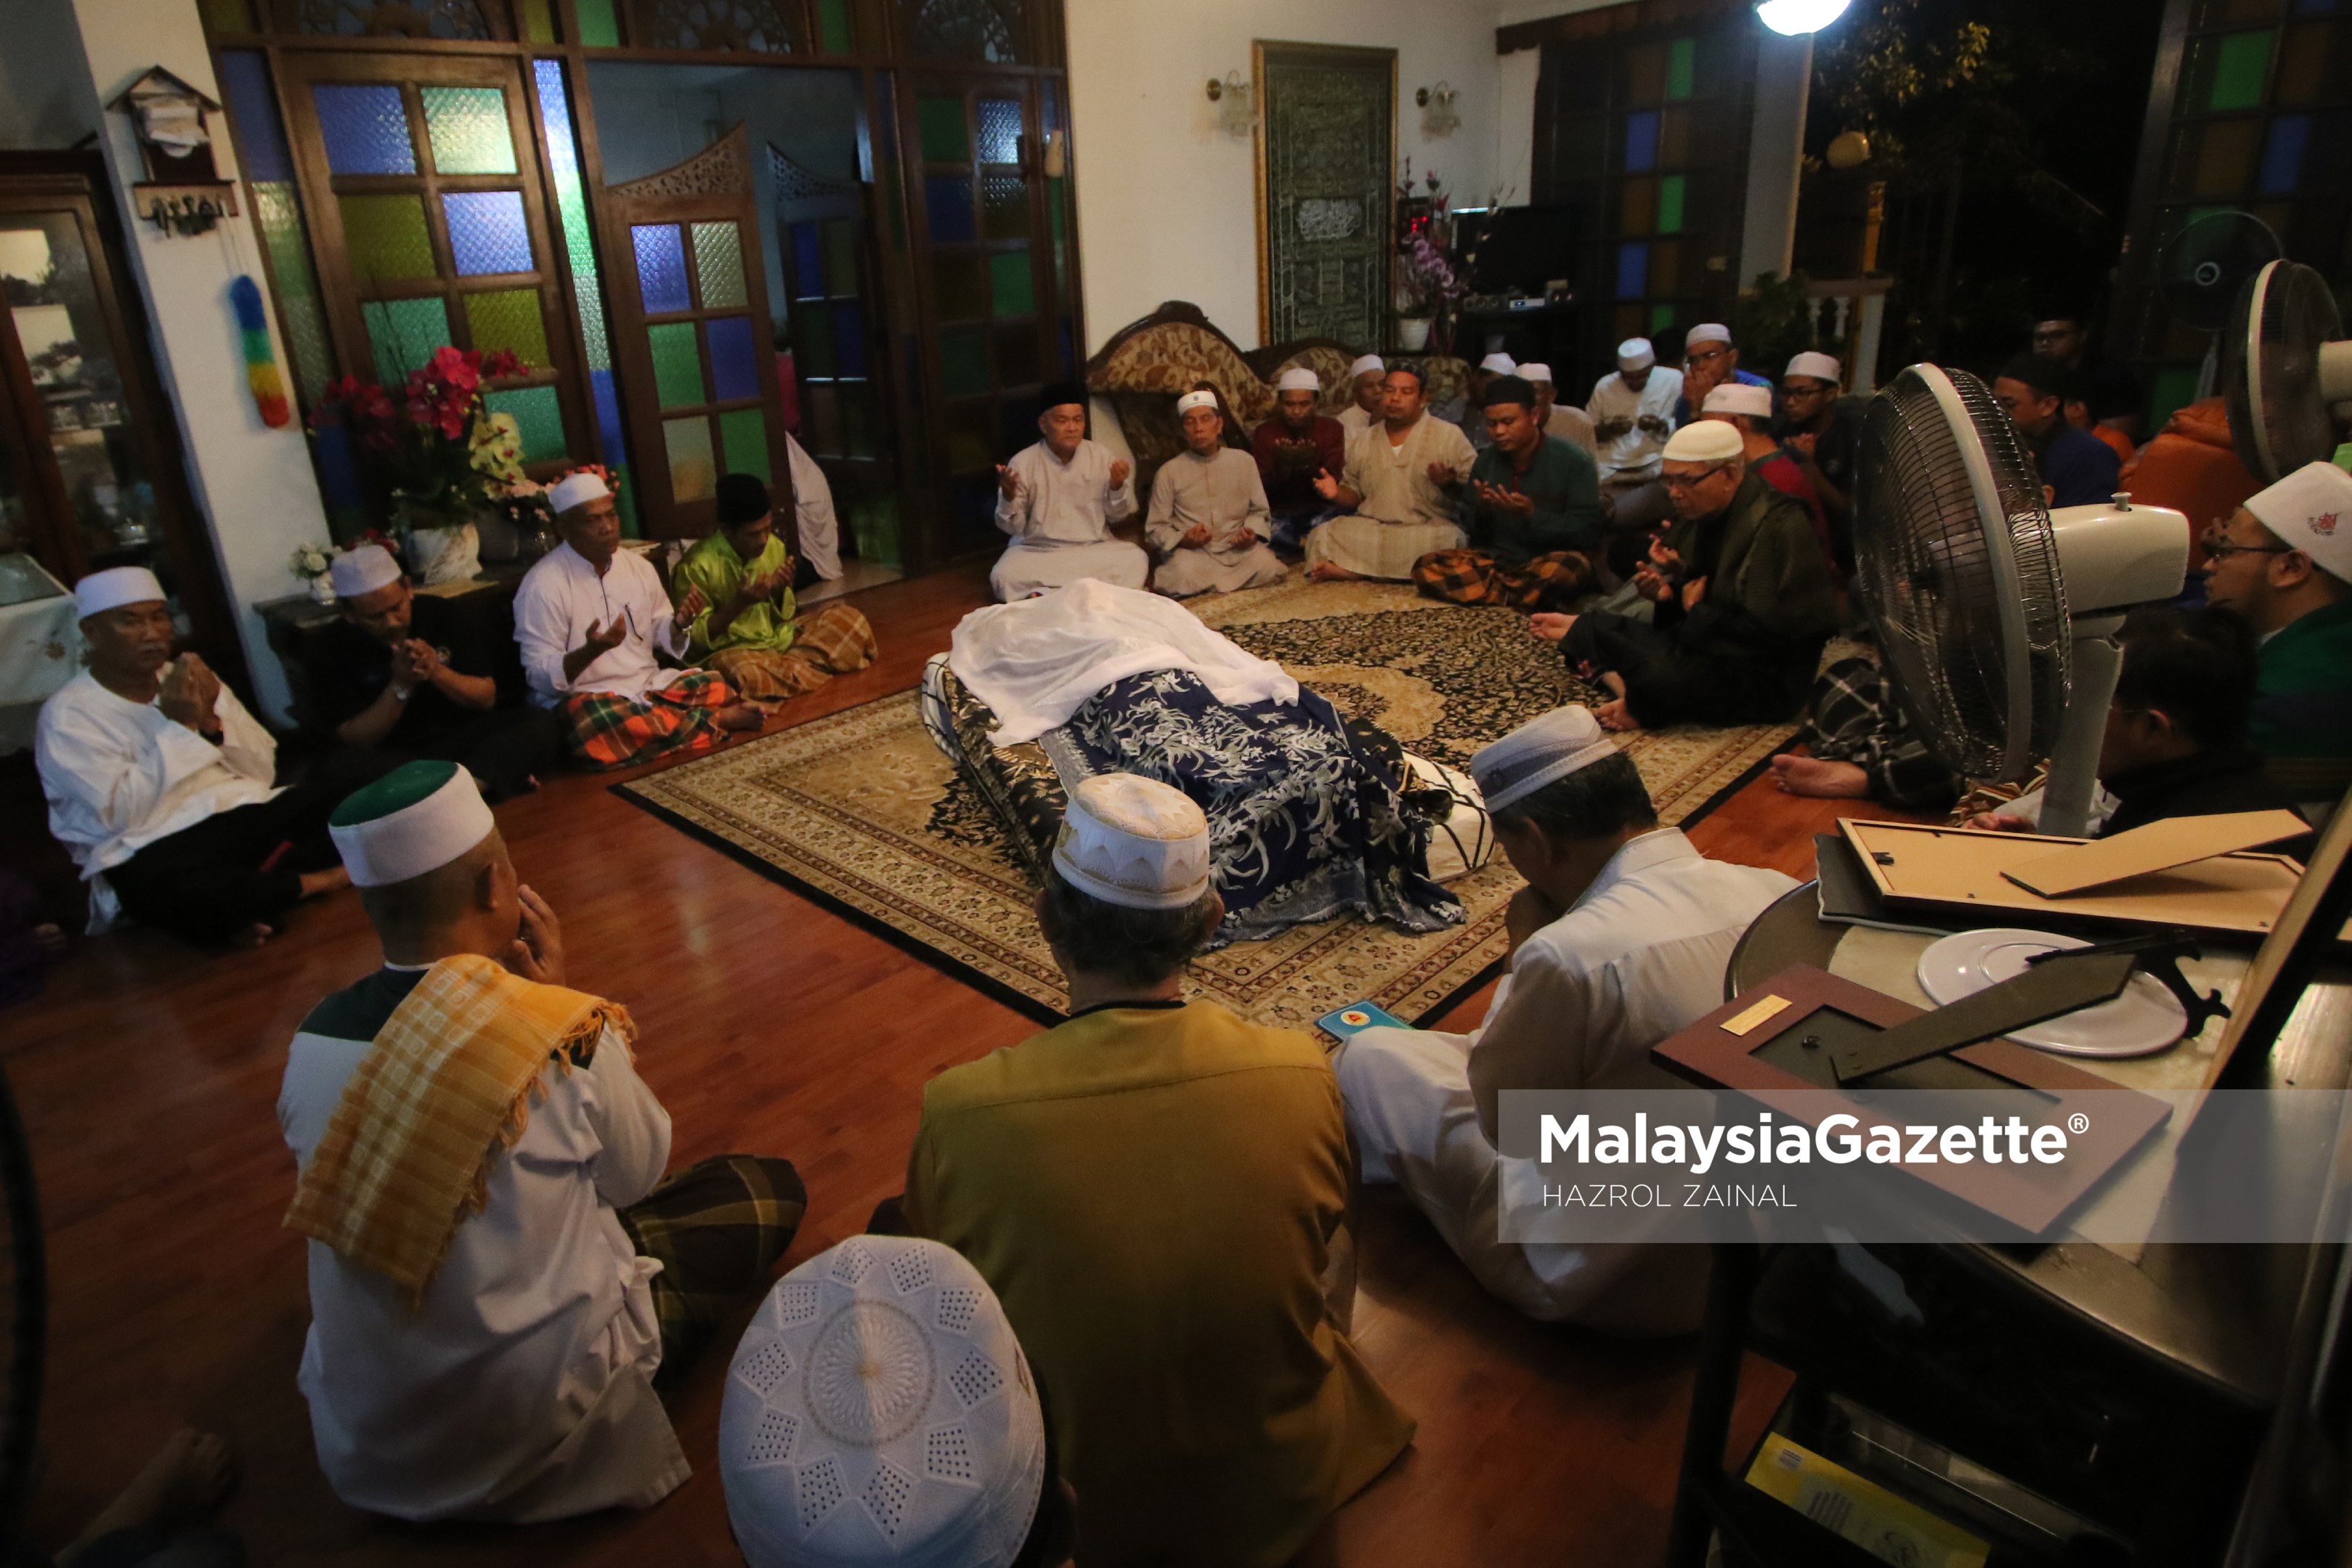 Orang ramai membaca surah Yasin ketika hadir menziarahi jenazah Allahyarham Seniman Tan Sri Jins Shamsuddin di Kampung Pasir Hulu Kelang, Selangor. foto MOHD HAZROL ZAINAL, 01 MAC 2017.